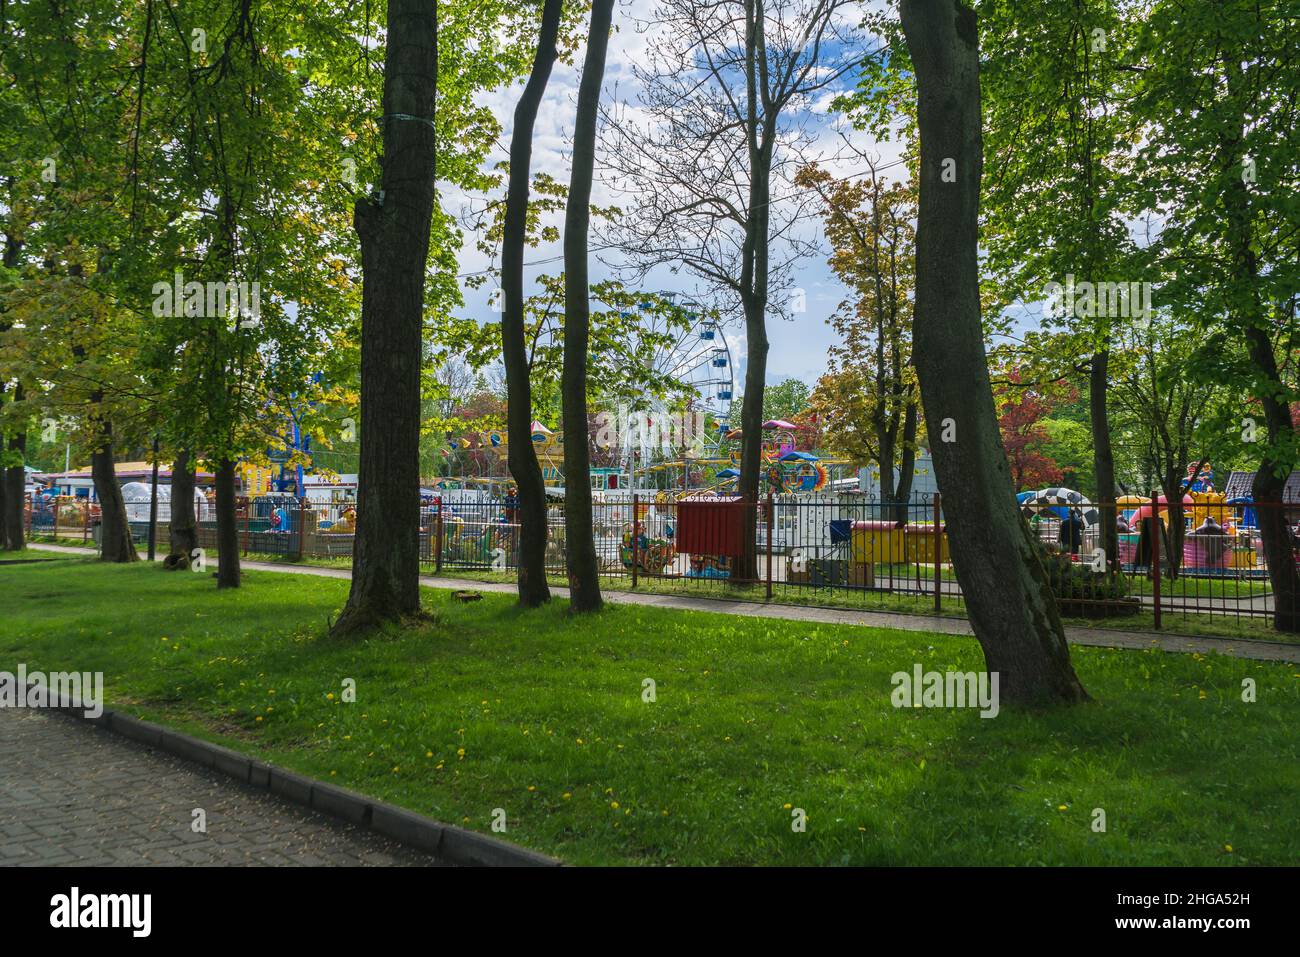 Kaliningrad, Russia - 16 maggio 2021: Parco divertimenti all'interno del parco centrale il giorno della primavera Foto Stock